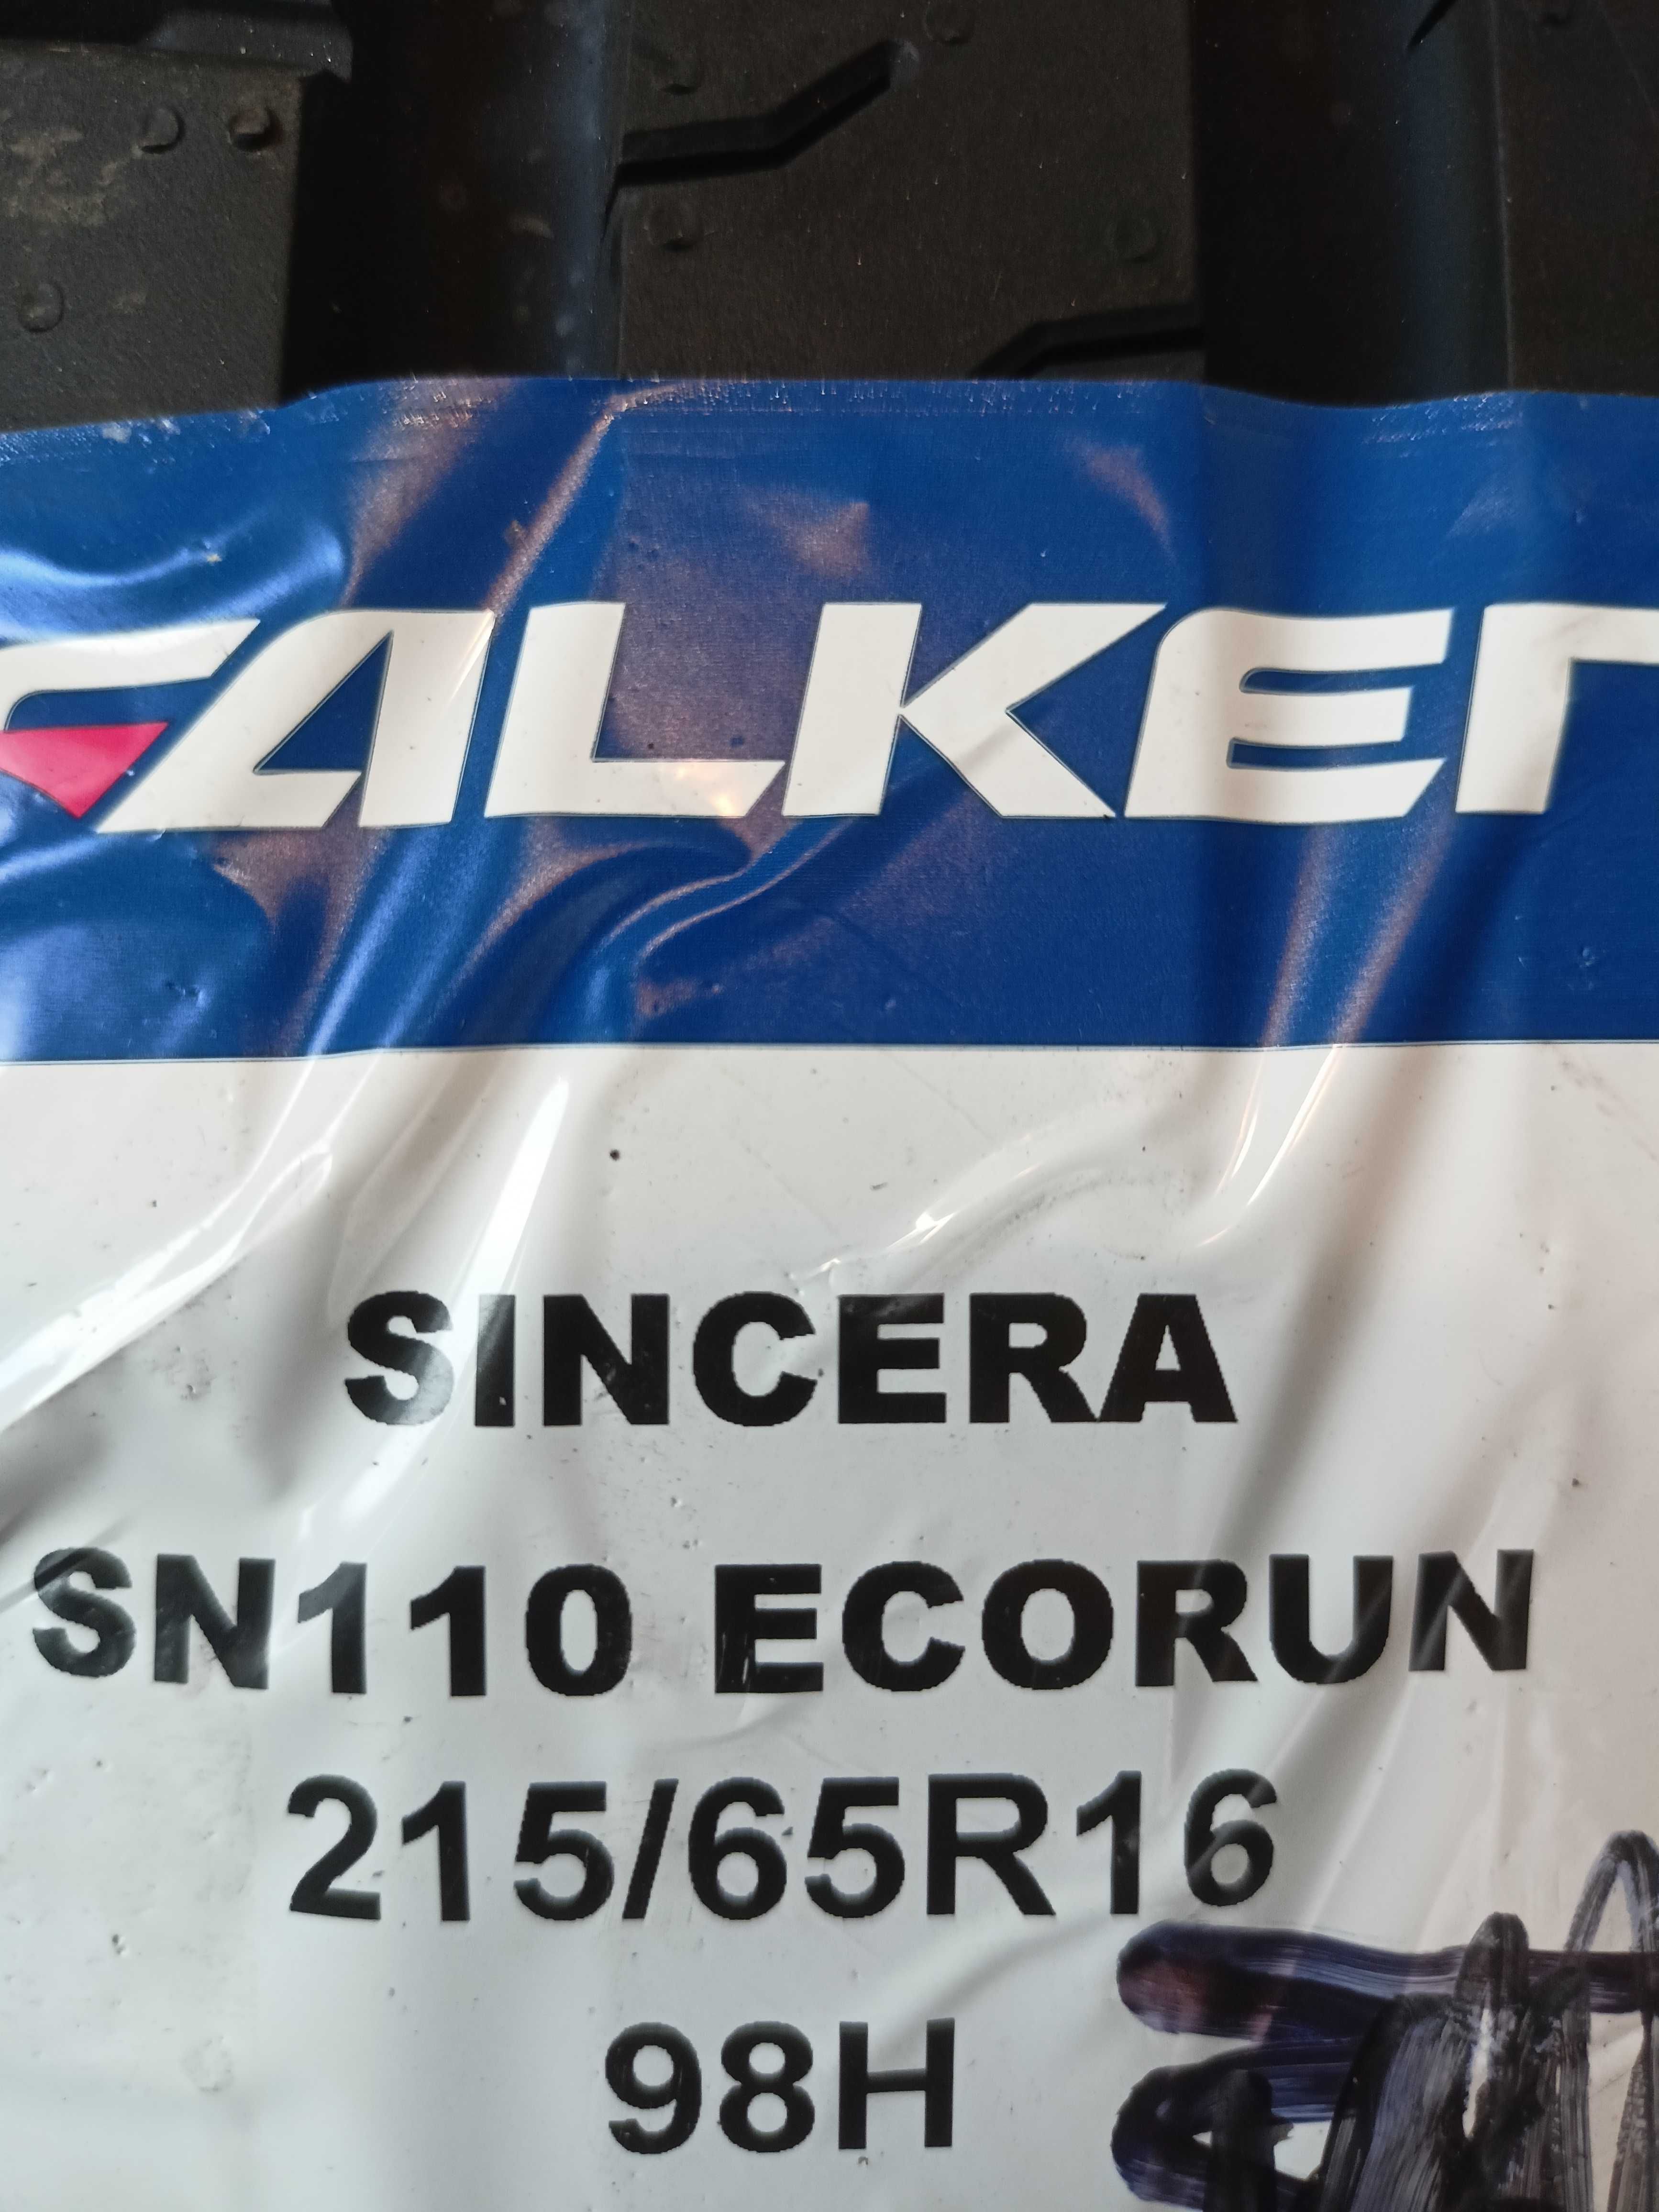 Falken Sincera SN110 Ecorun 215/65R16 98H